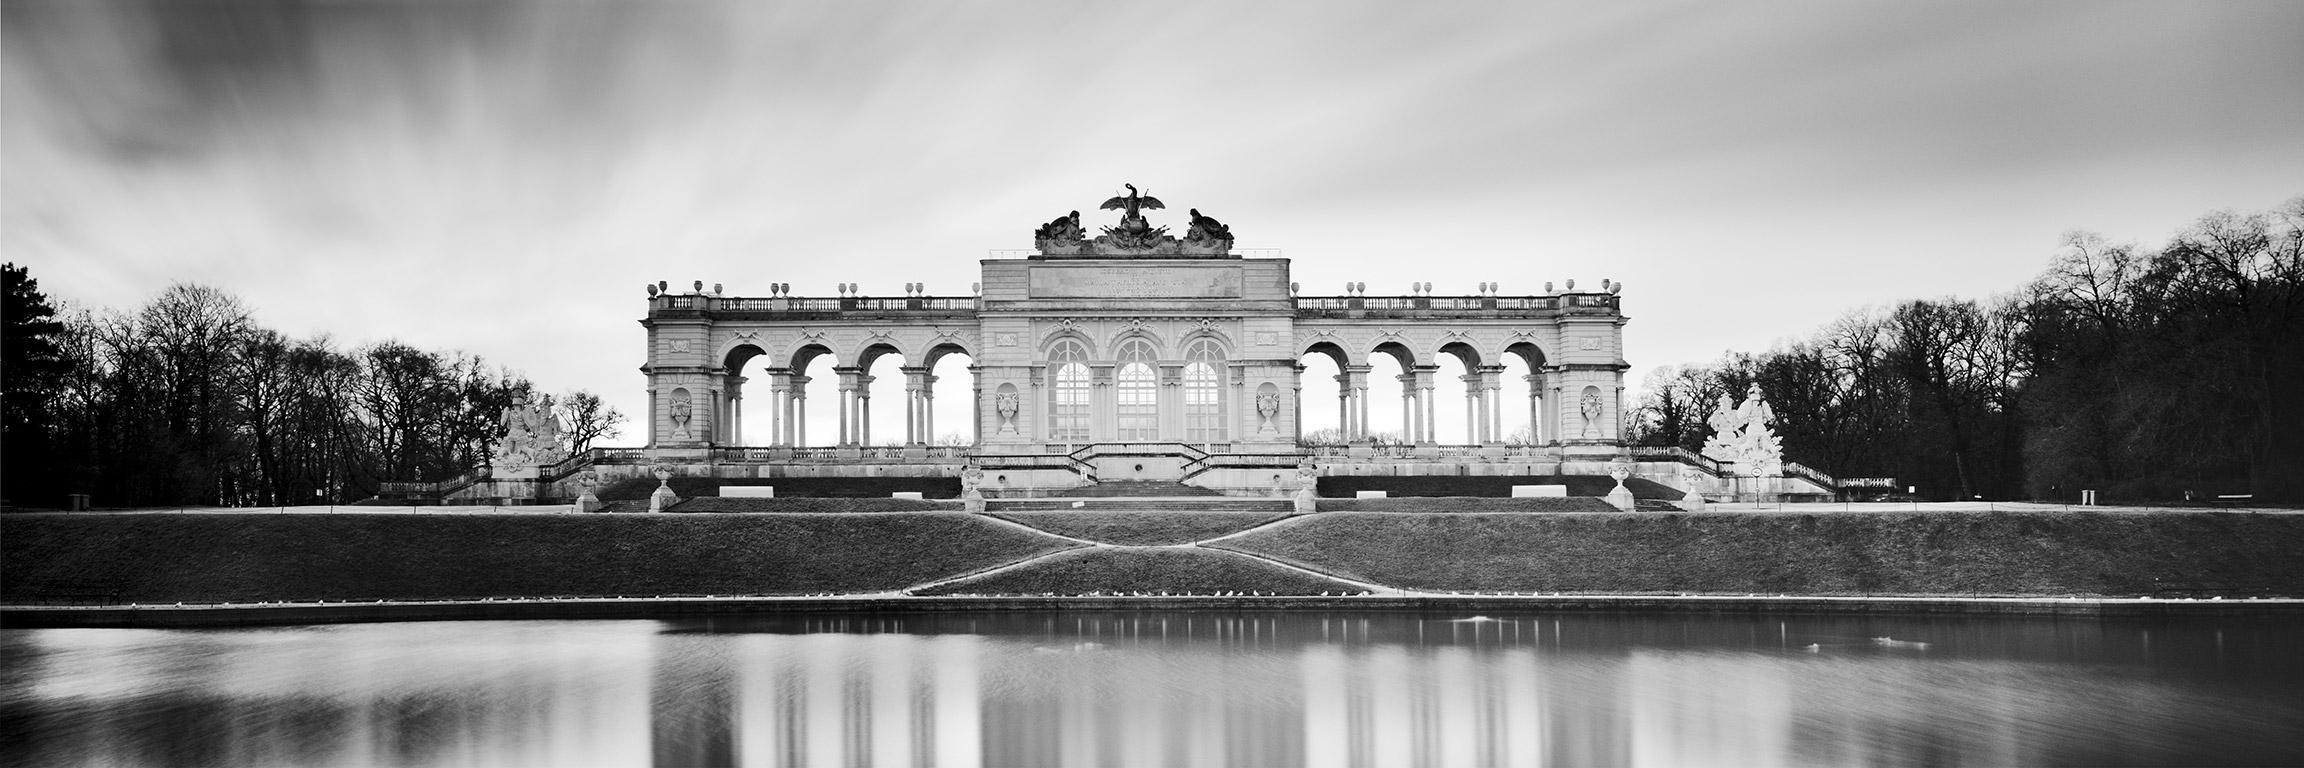 Gerald Berghammer Black and White Photograph - Gloriette Panorama, Schloss Schoenbrunn, Vienna, black and white art photography